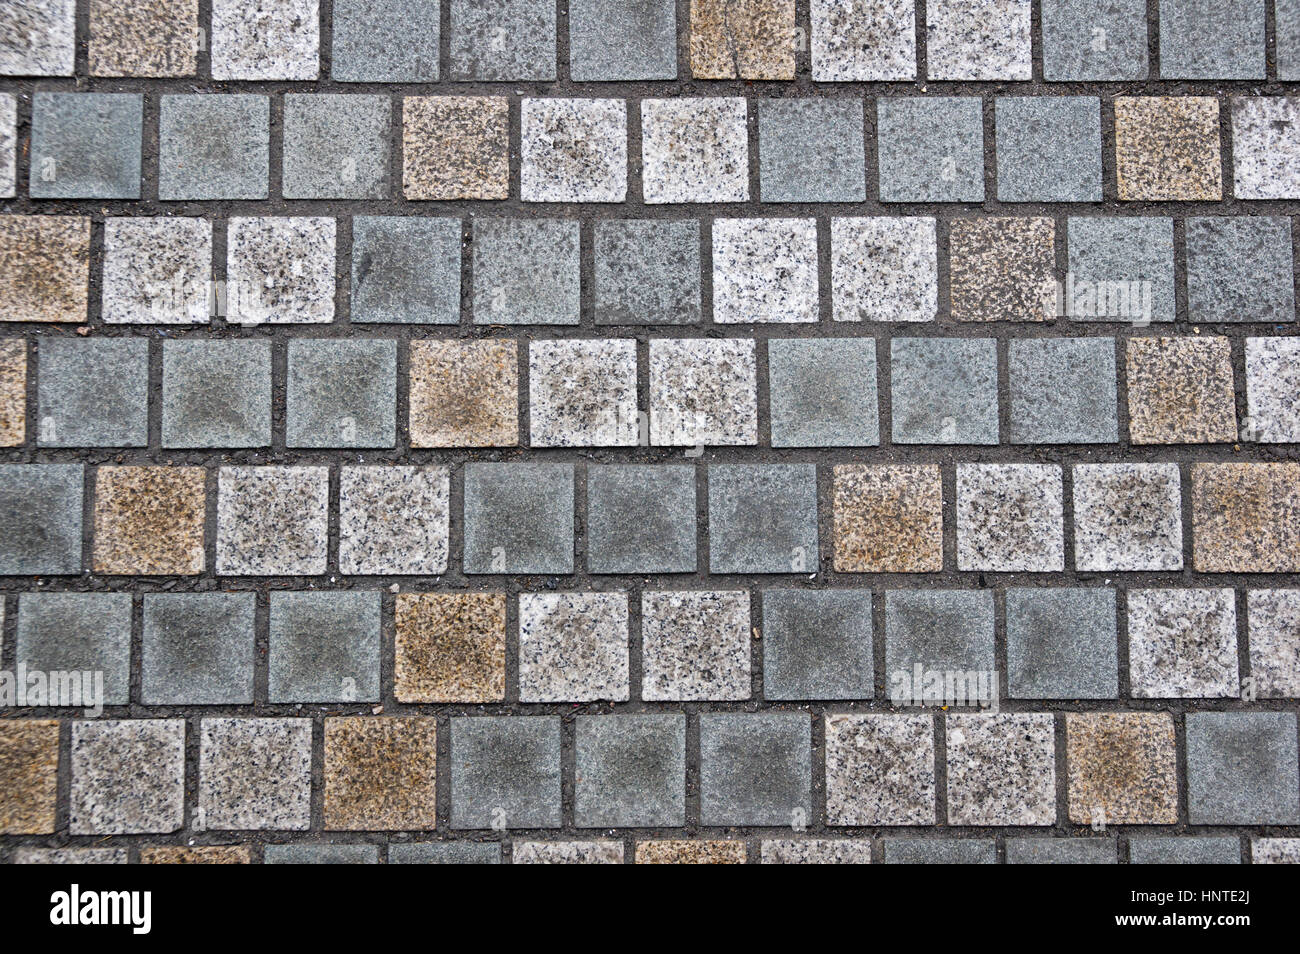 Bloc de pierre carrés texture de fond de la chaussée Banque D'Images